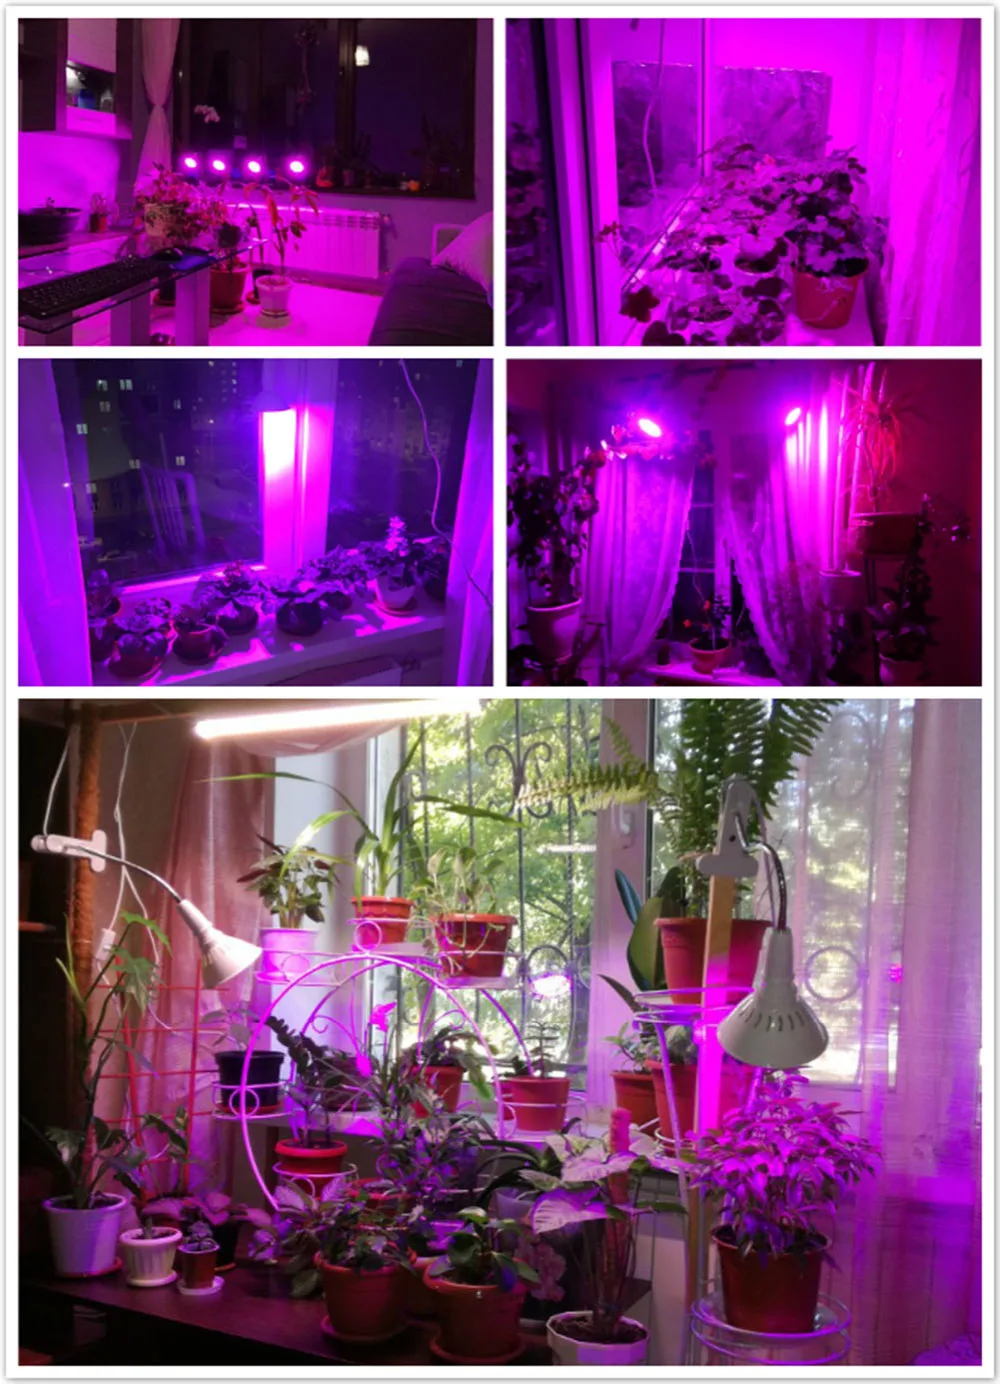 200 светодиодный светильник для выращивания растений, цветов, овощей, светильник s для комнатной теплицы, система гидропоники+ держатель для стола